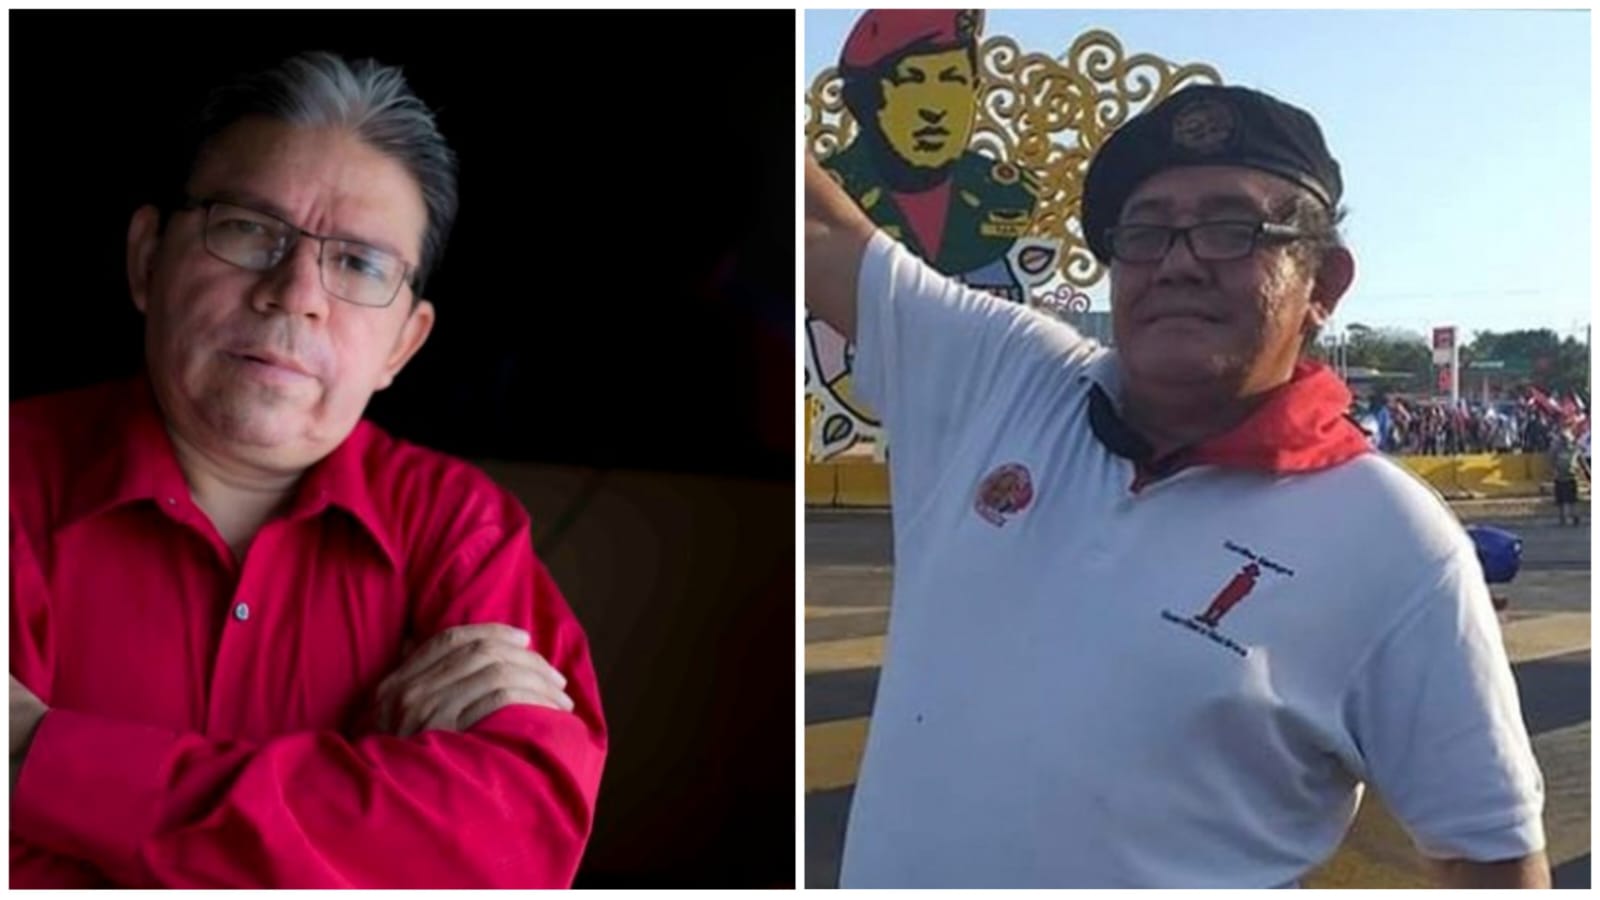 Pablo Cuevas abogado defensor de derechos humanos y Marlon Sáenz, paramilitar conocido como el Chino Enoc